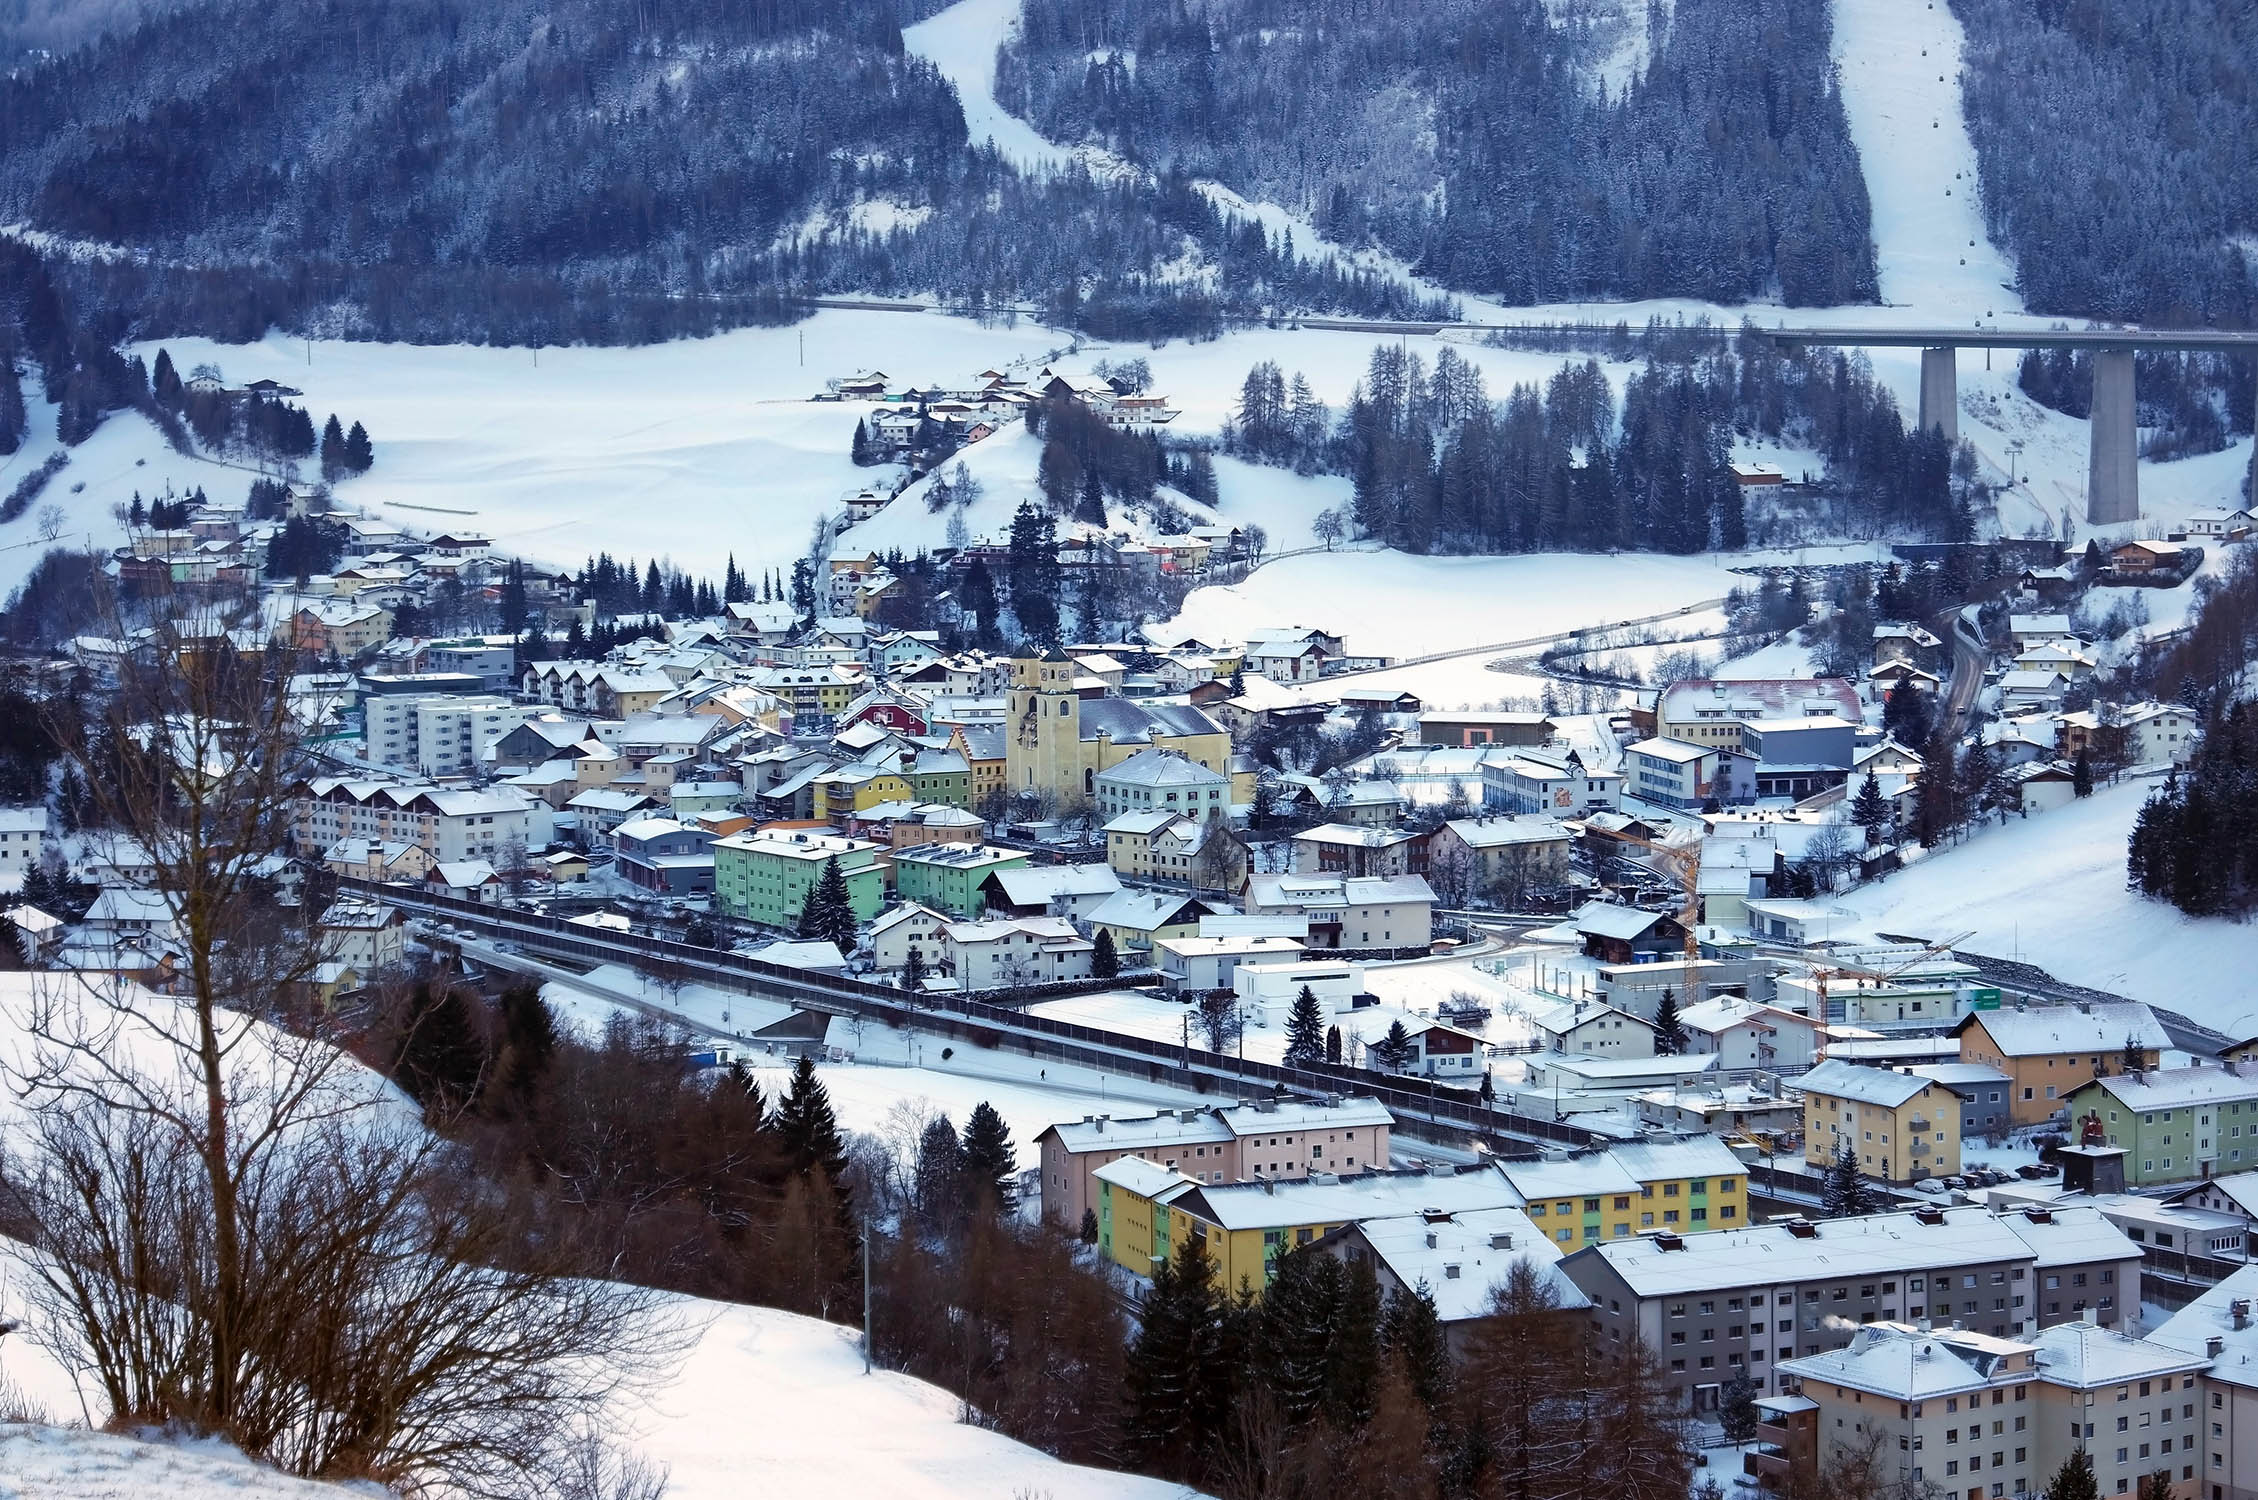 Steinach in Tirol photo, copyright: 